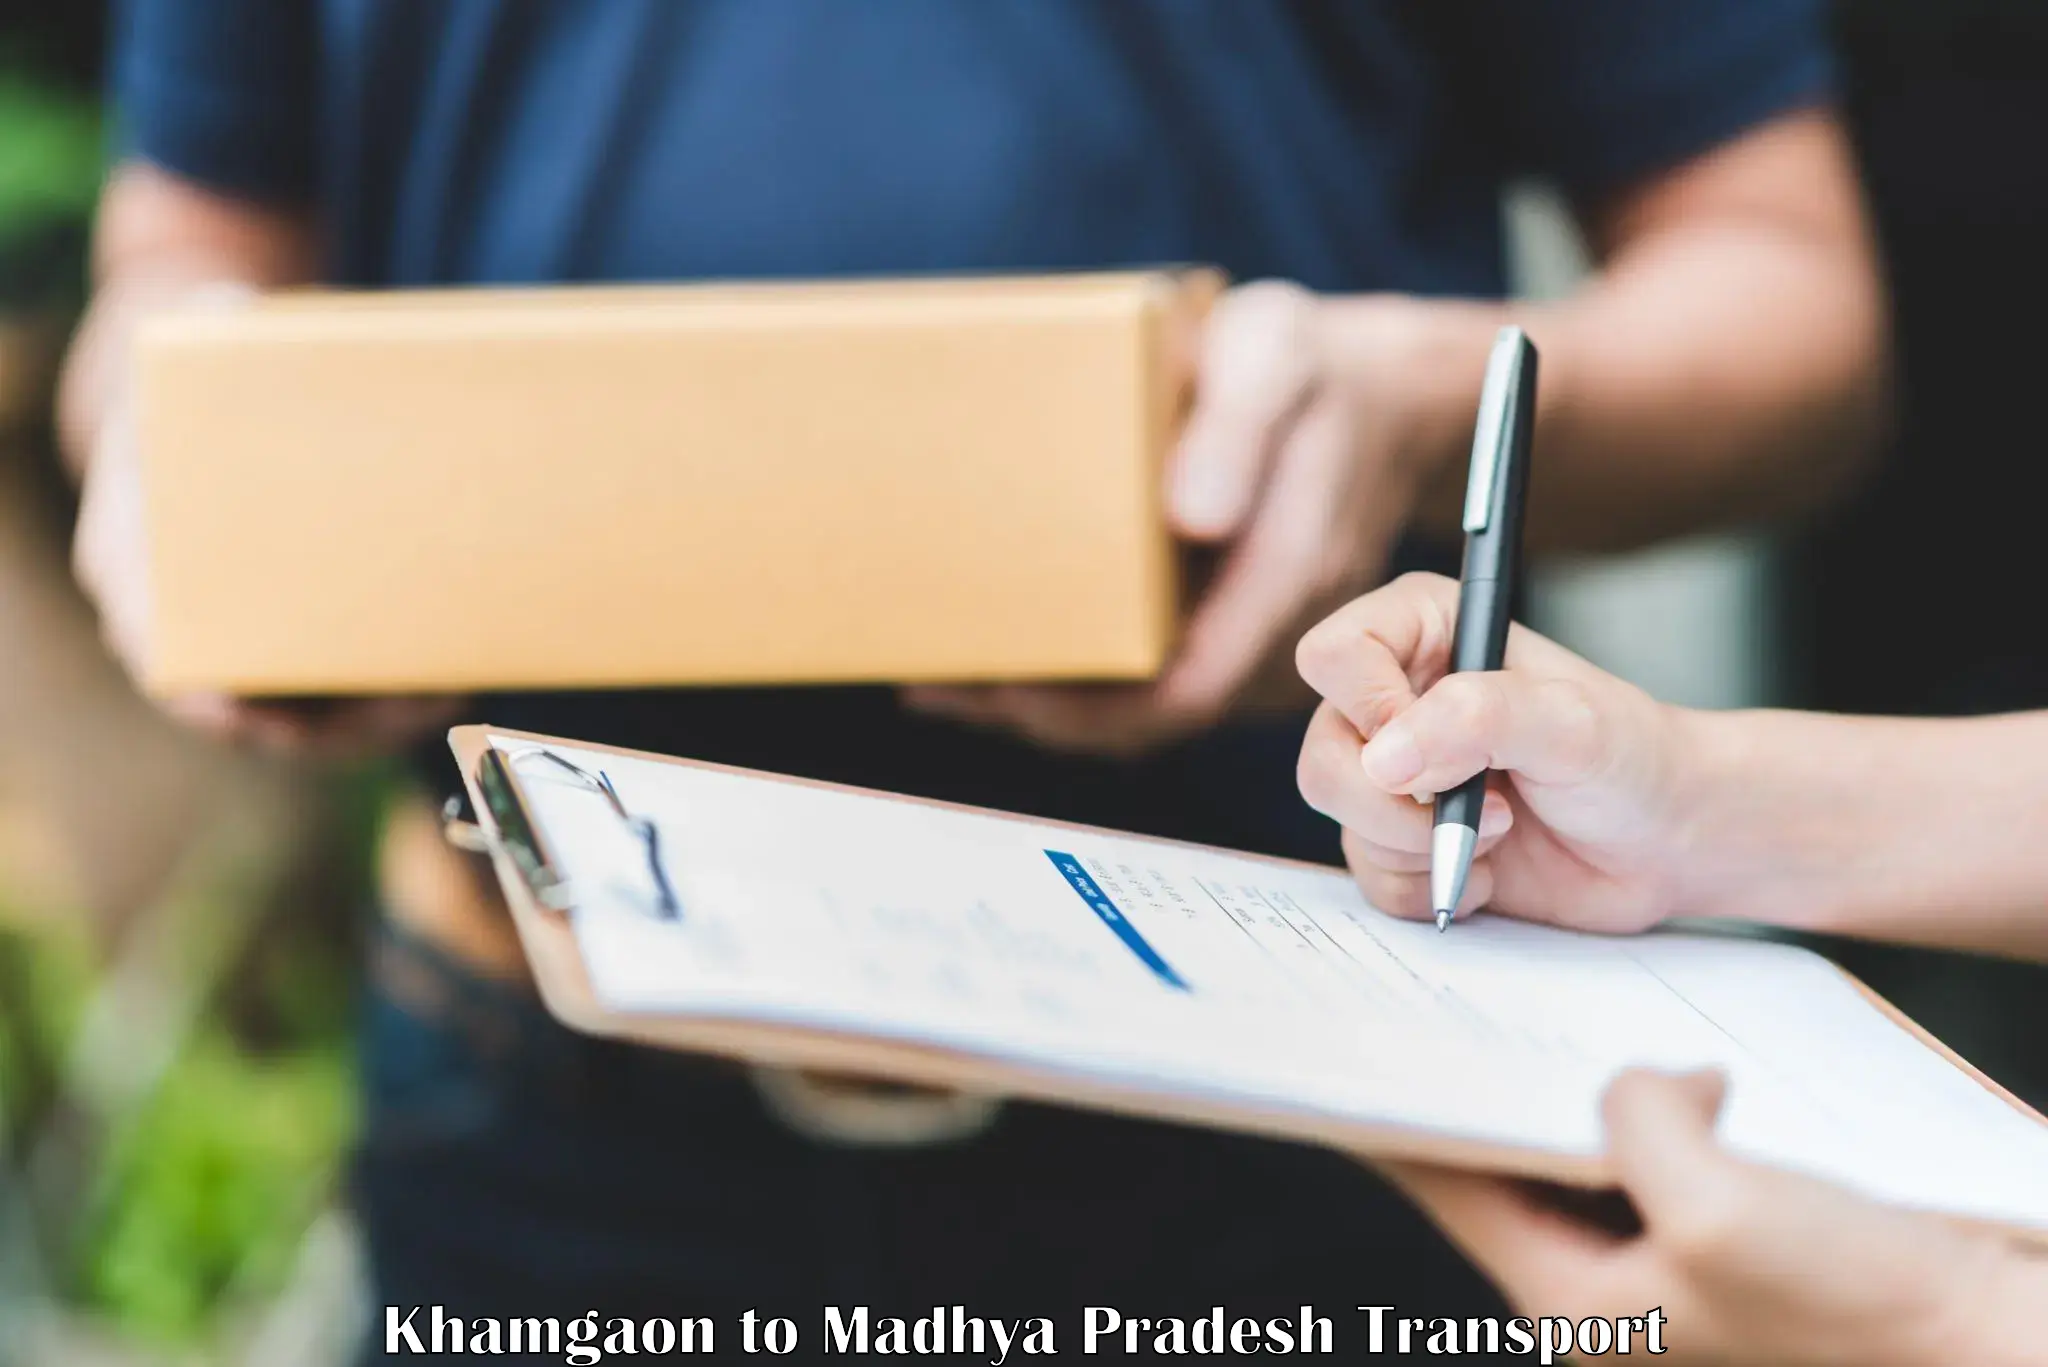 Daily parcel service transport Khamgaon to Khajuraho